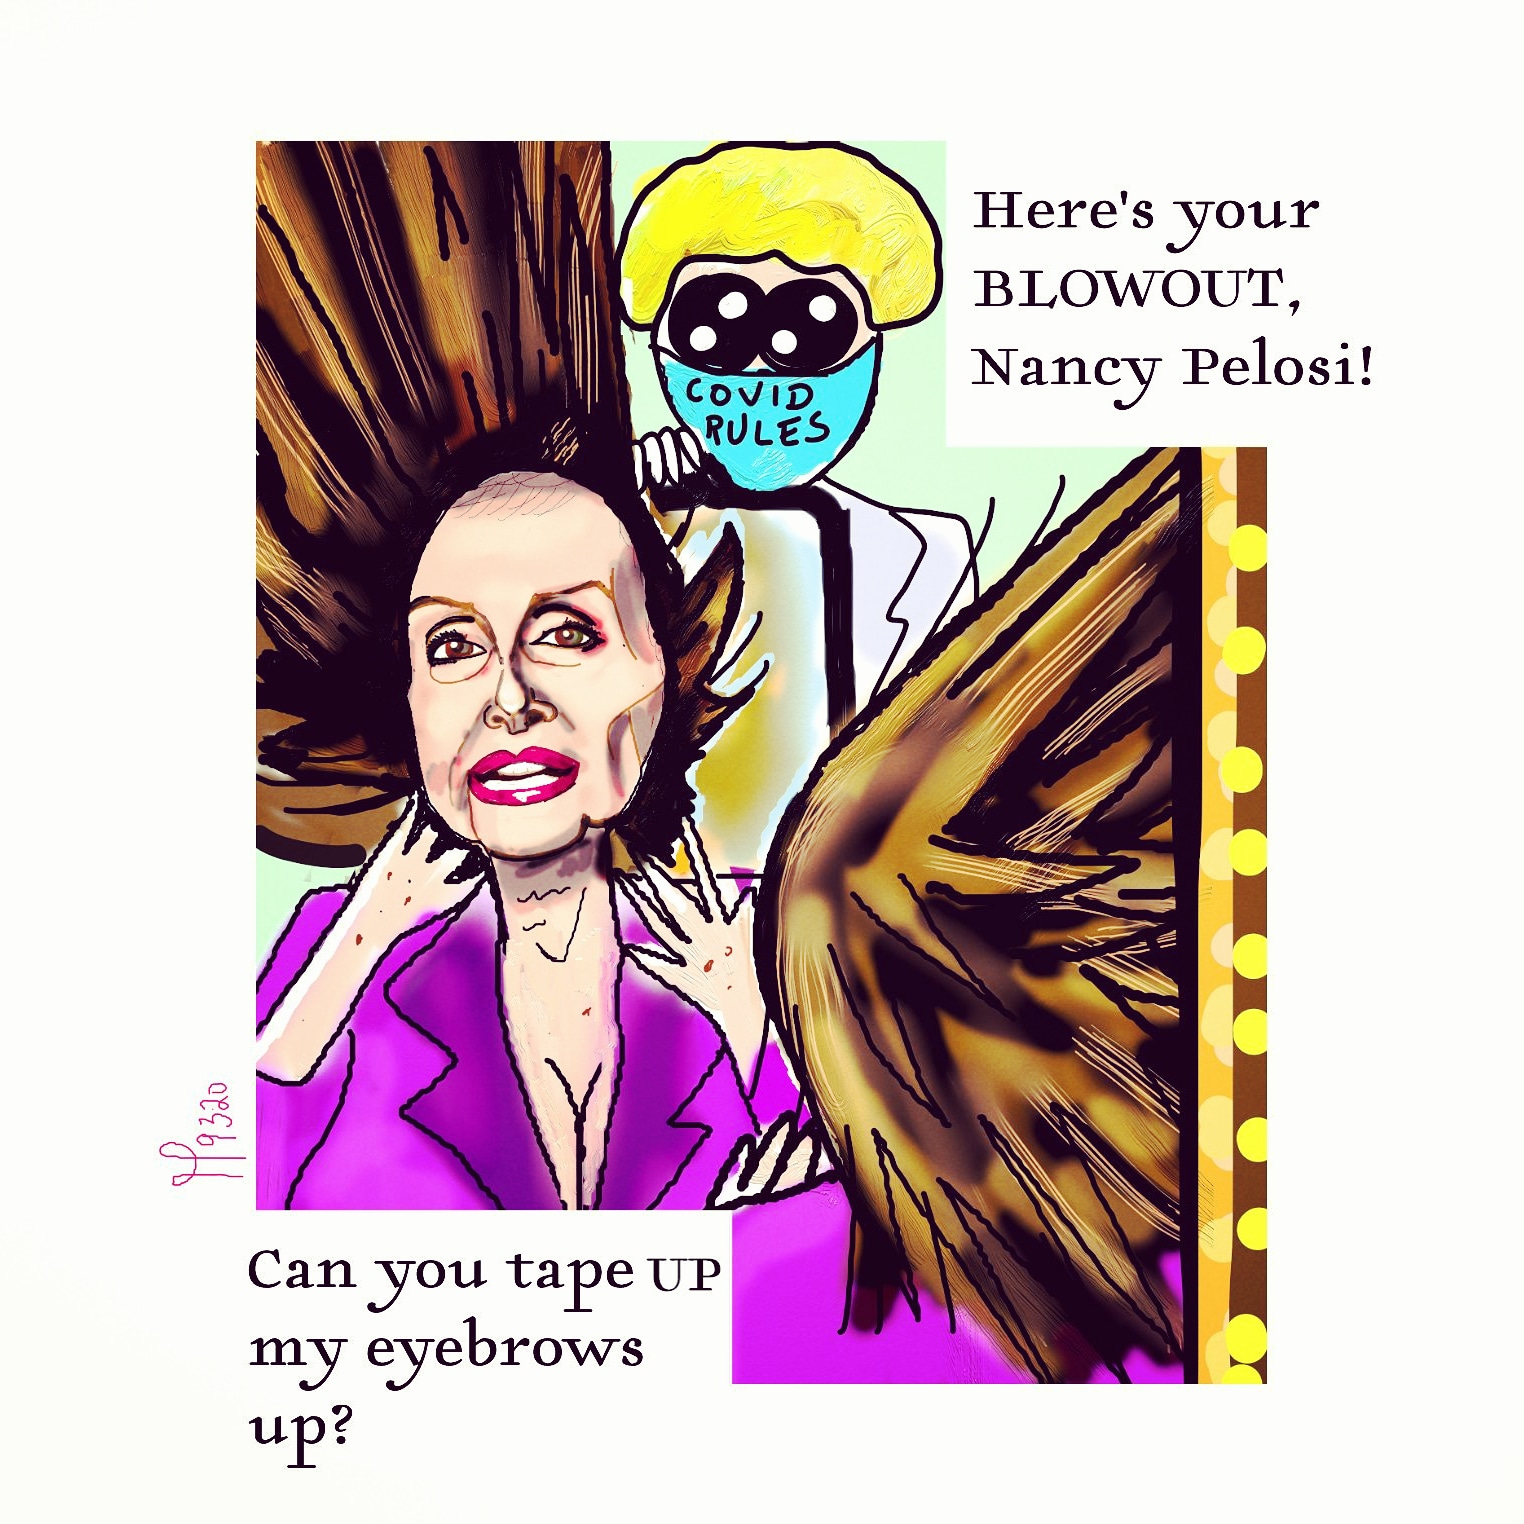 Nancy Pelosi Wolf Blitzer Bill Barr political cartoon Coronavirus Cnn #fakenews #donaldtrump #pelosi hair salon blowout caricature post thumbnail image